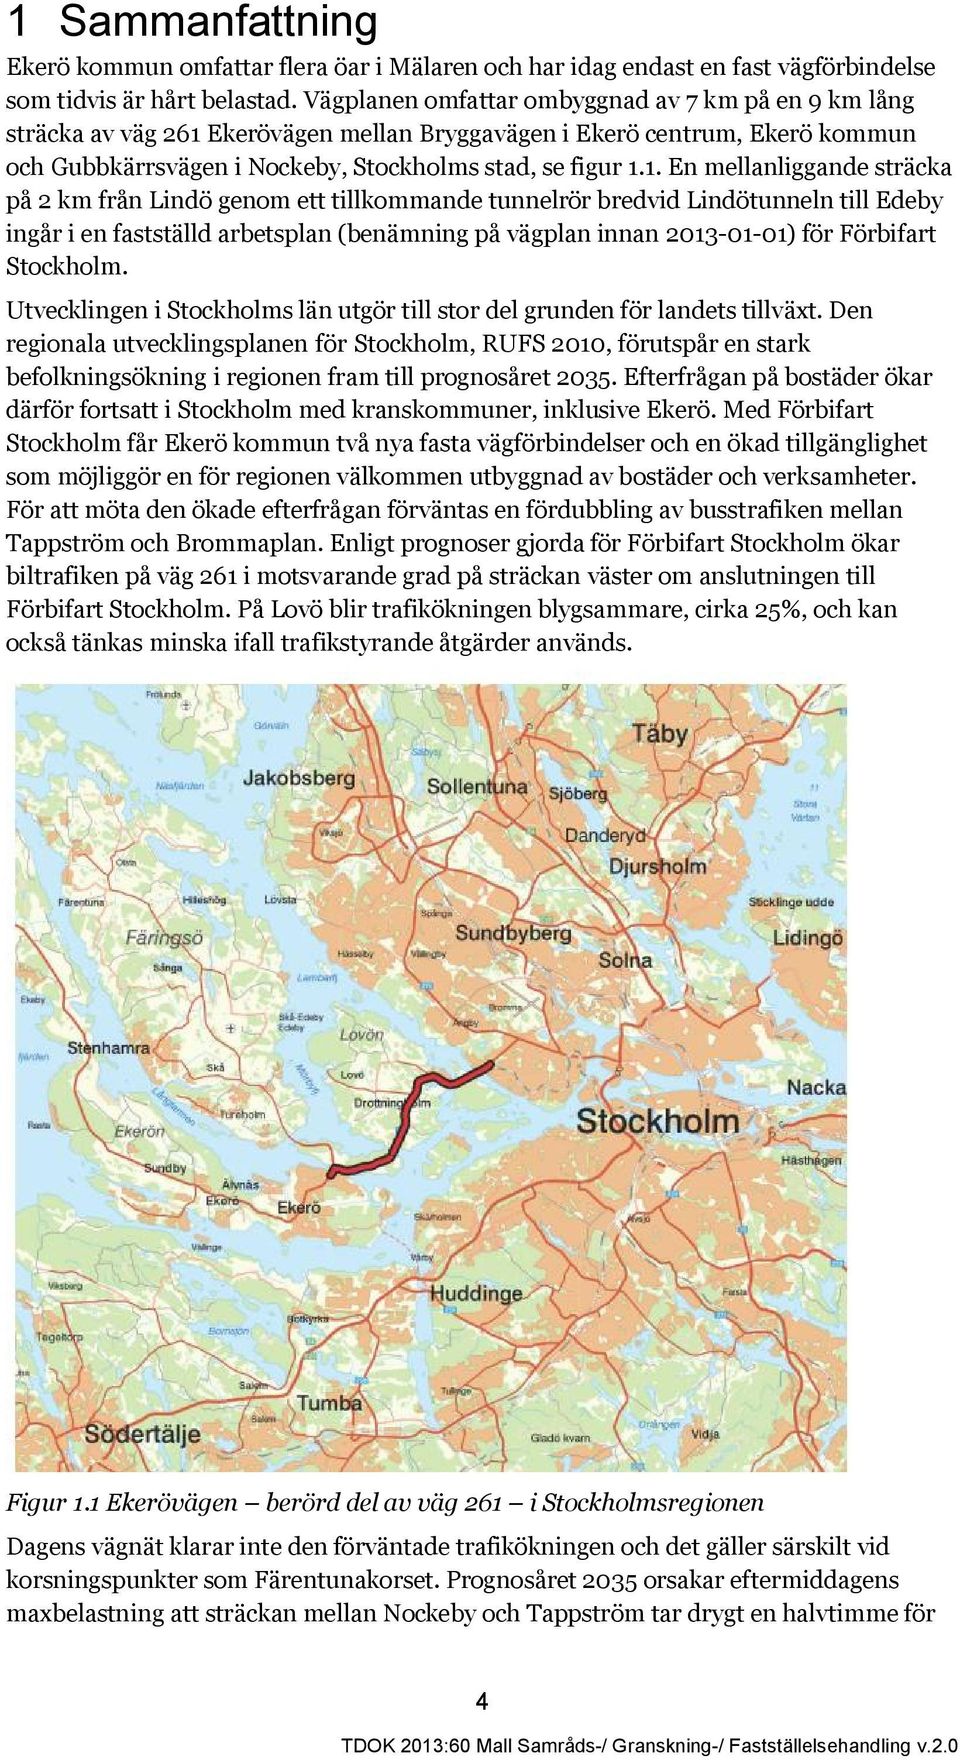 Ekerövägen mellan Bryggavägen i Ekerö centrum, Ekerö kommun och Gubbkärrsvägen i Nockeby, Stockholms stad, se figur 1.